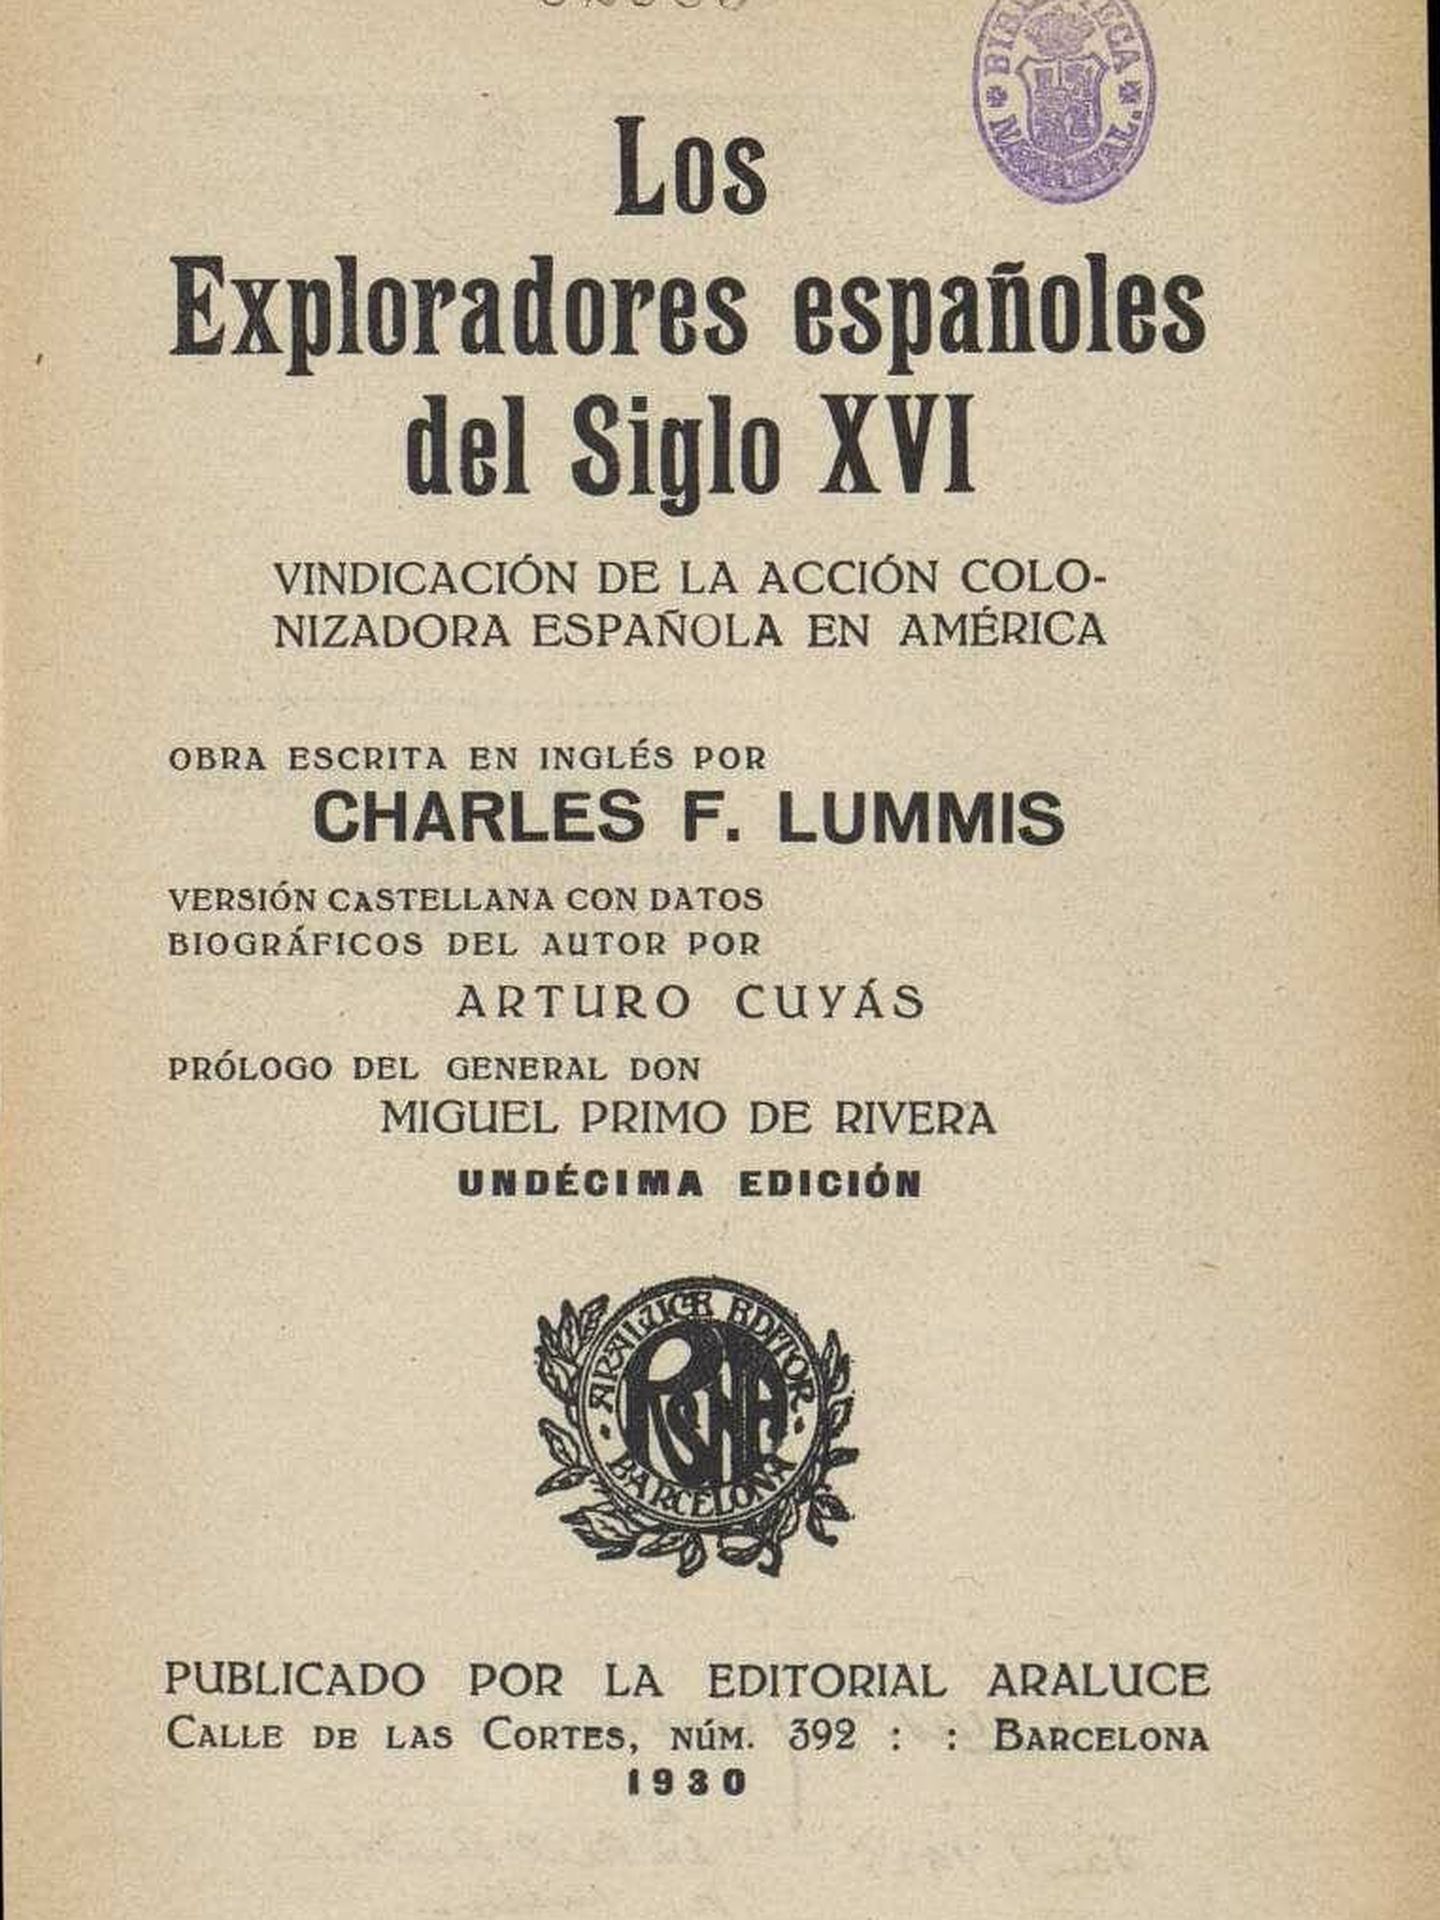 'The Spanish Pioneers', traducida al español, publicada en 1930.